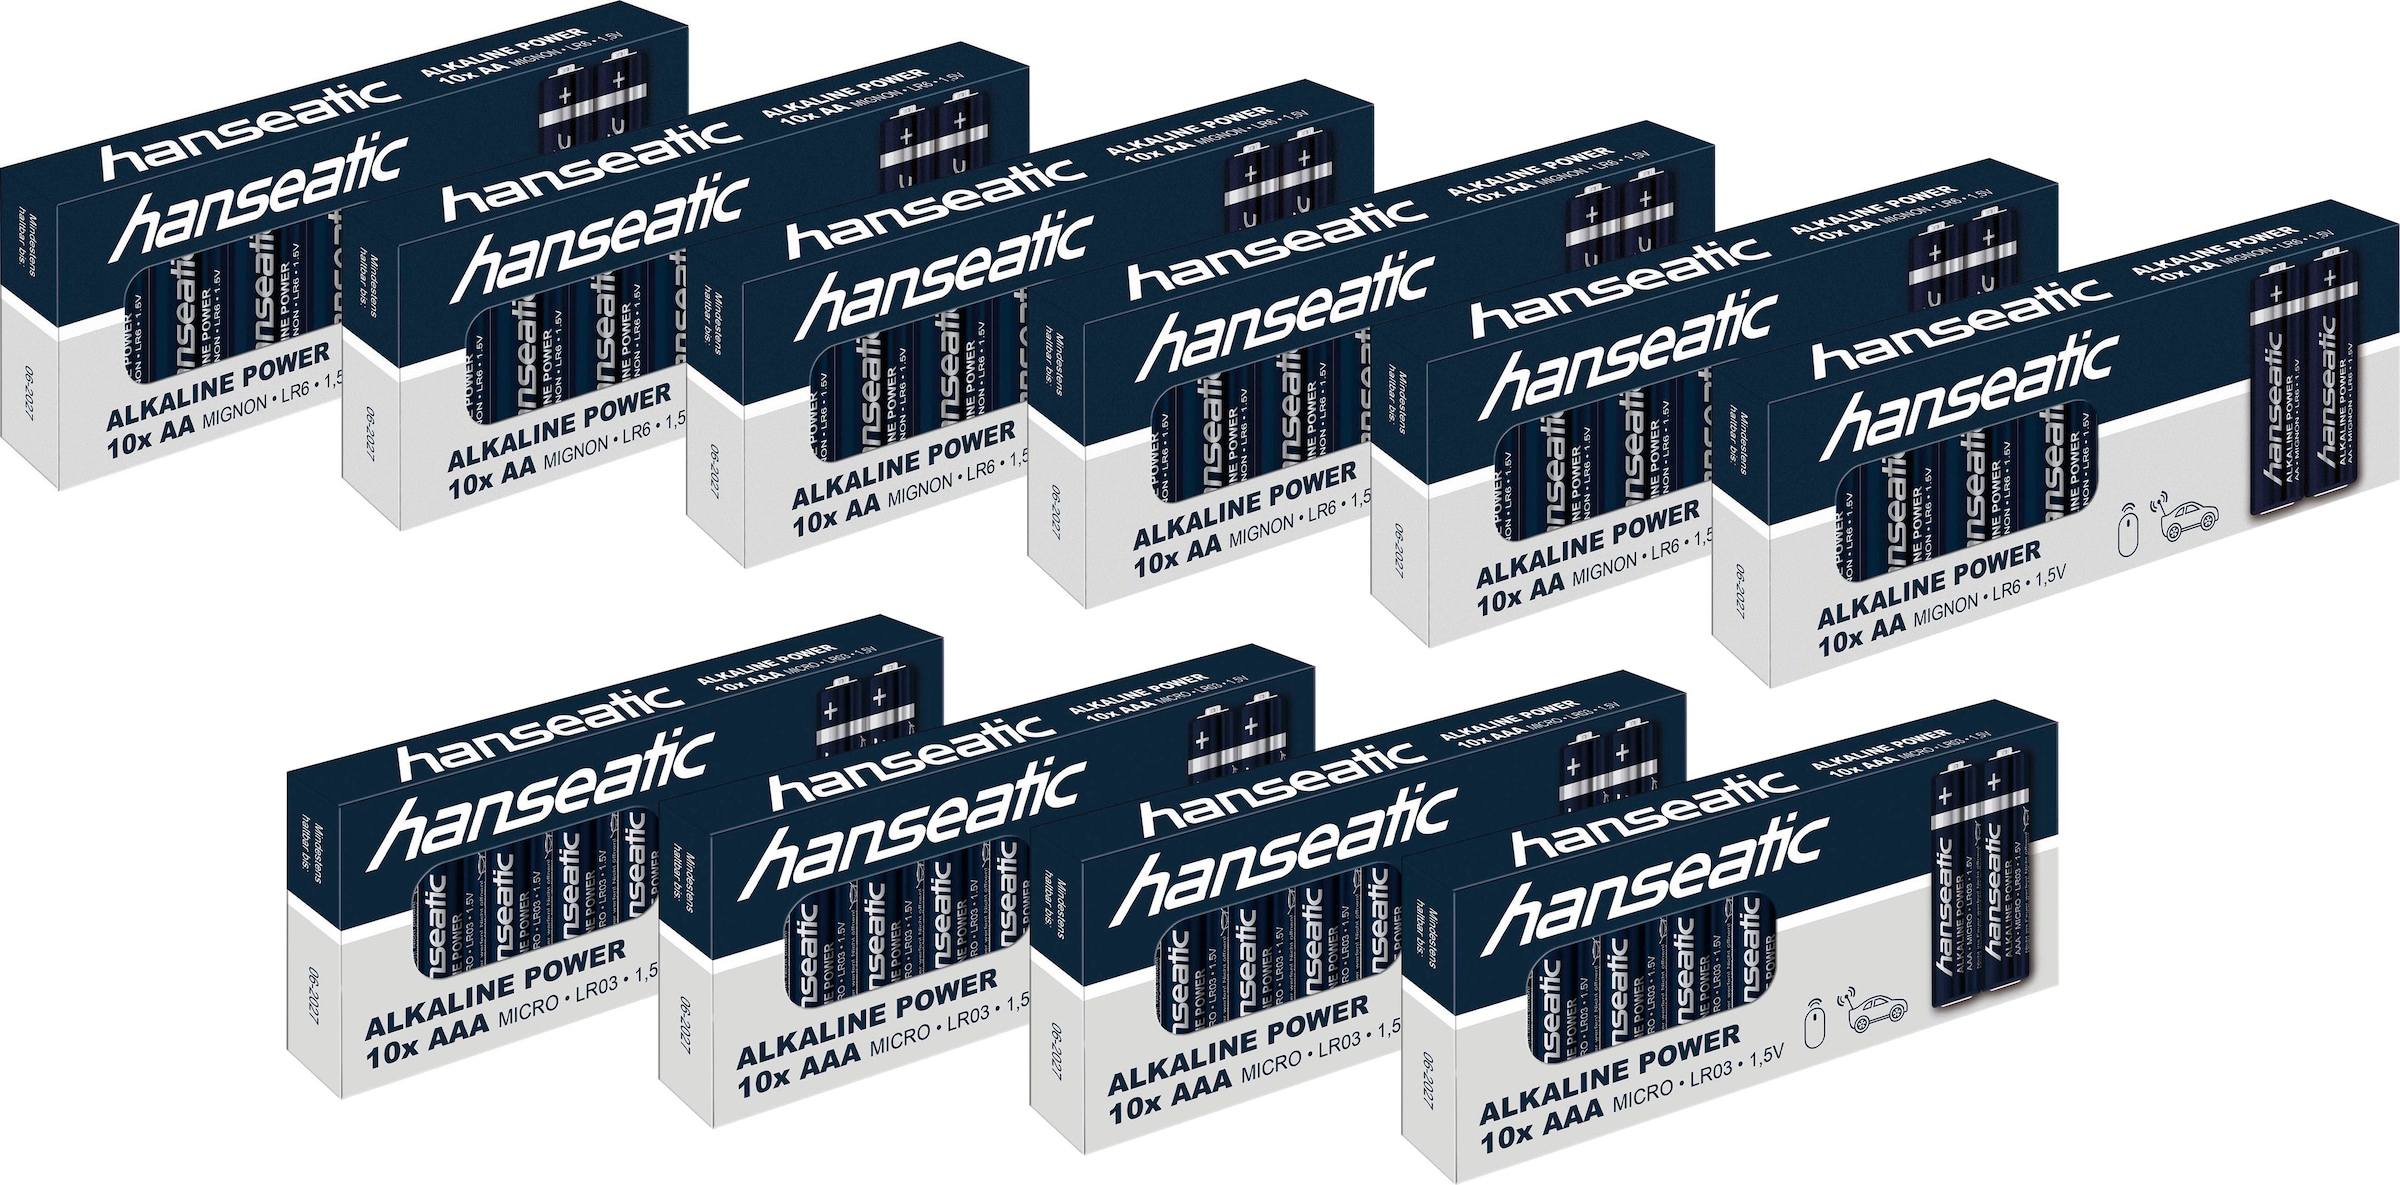 Hanseatic Batterie »Batterie Set 60 + 40 Stück«, (Set)